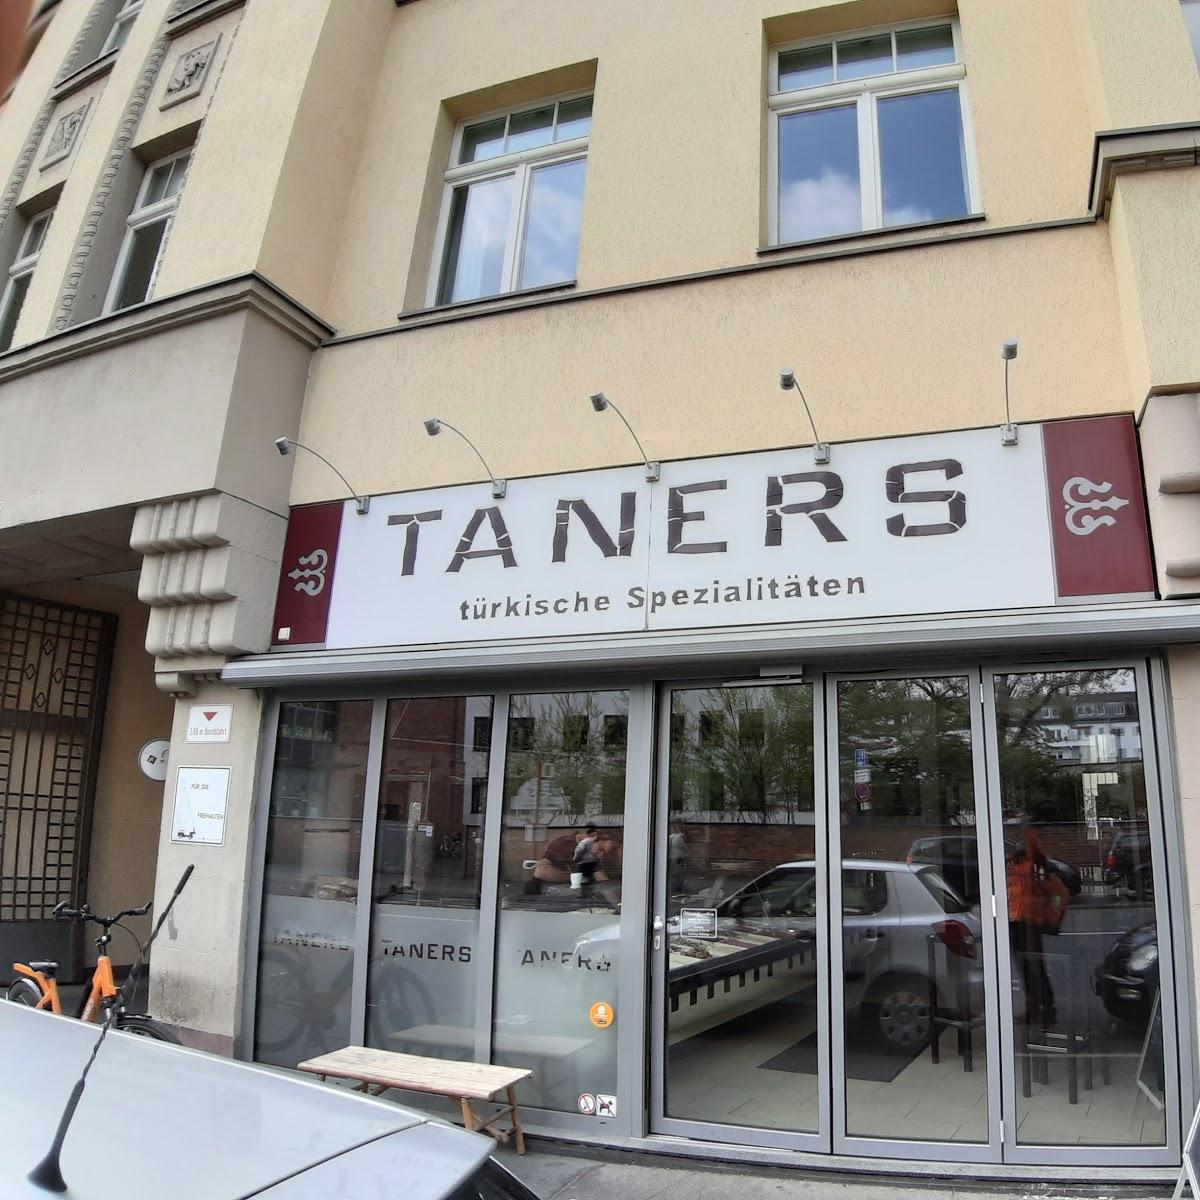 Restaurant "Taners Schnellrestaurant" in Köln